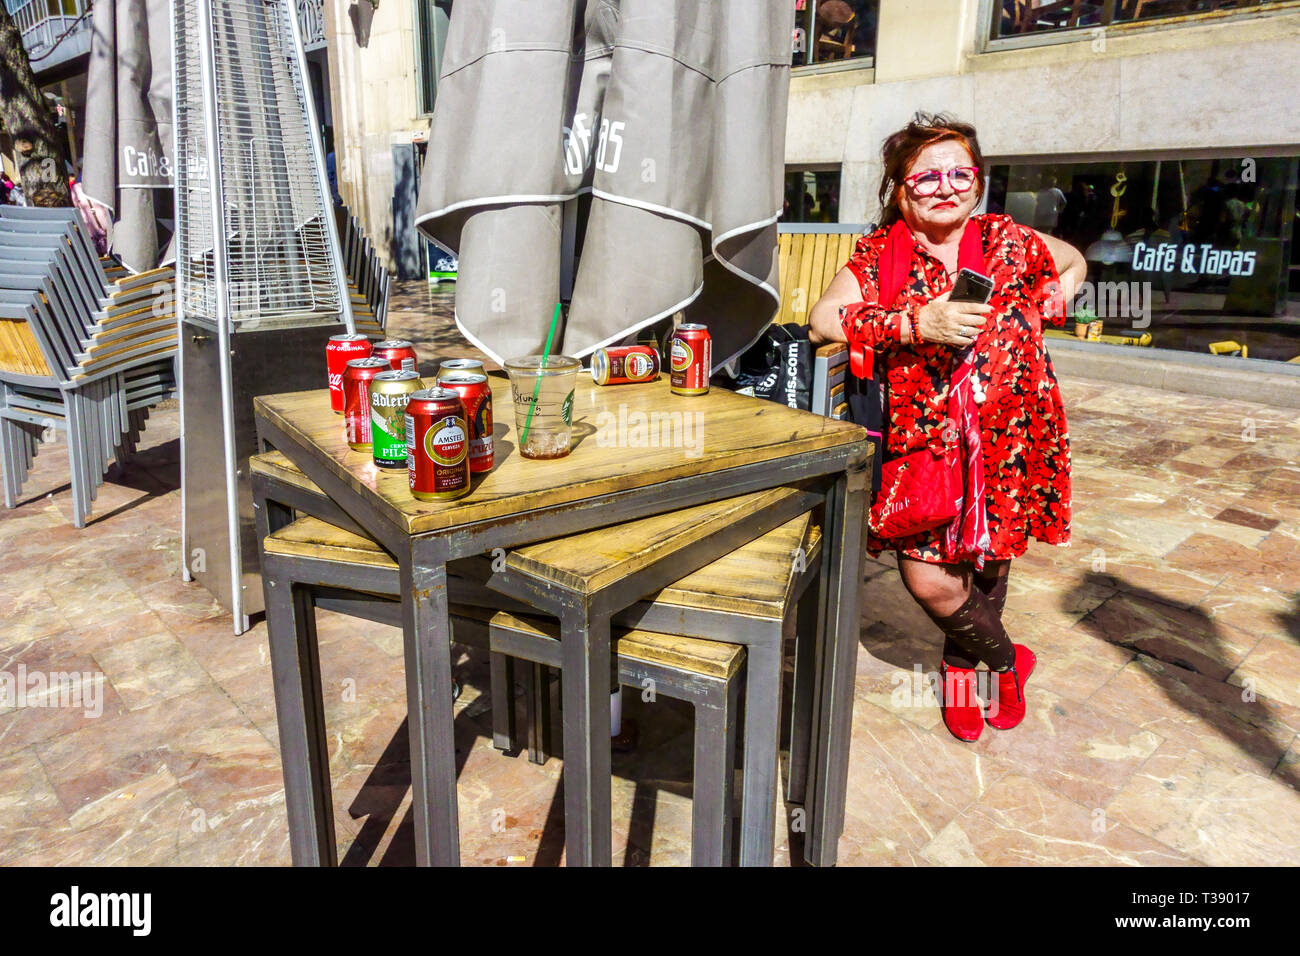 Portrait de femme en rouge en face du bar Cafe & Tapas, Plaça de l'Ajuntament, Place de l'hôtel de ville, Valencia Espagne Europe Banque D'Images